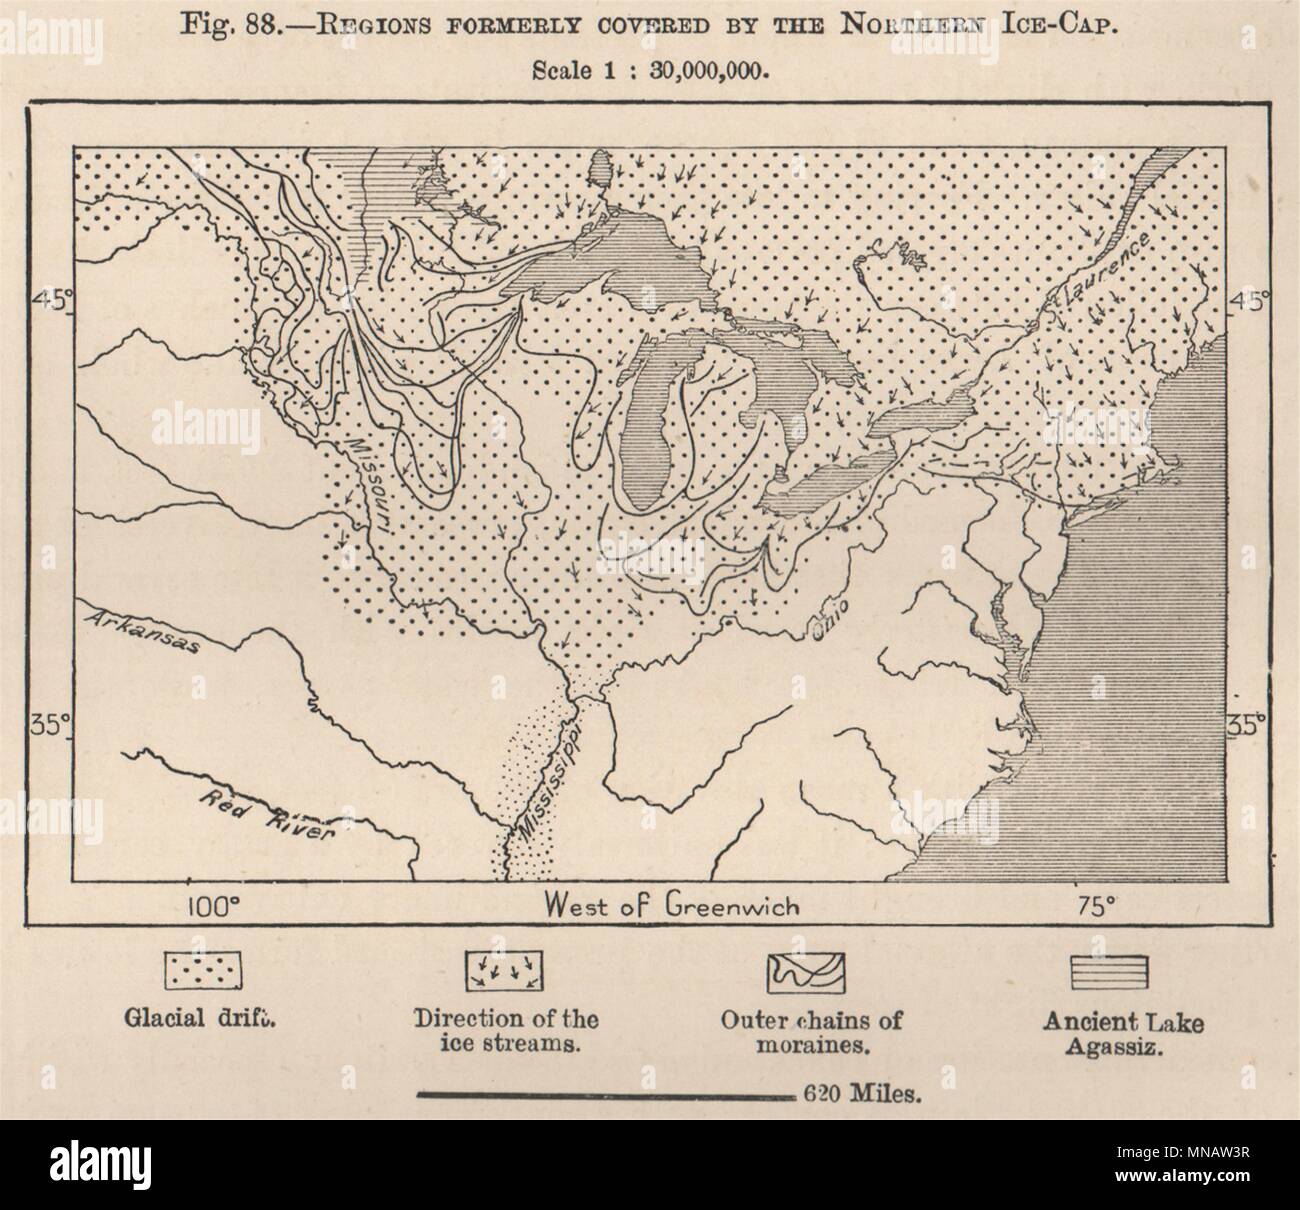 Régions anciennement couverts par la calotte de glace du Nord. Amérique du Nord 1885 Ancien site Banque D'Images